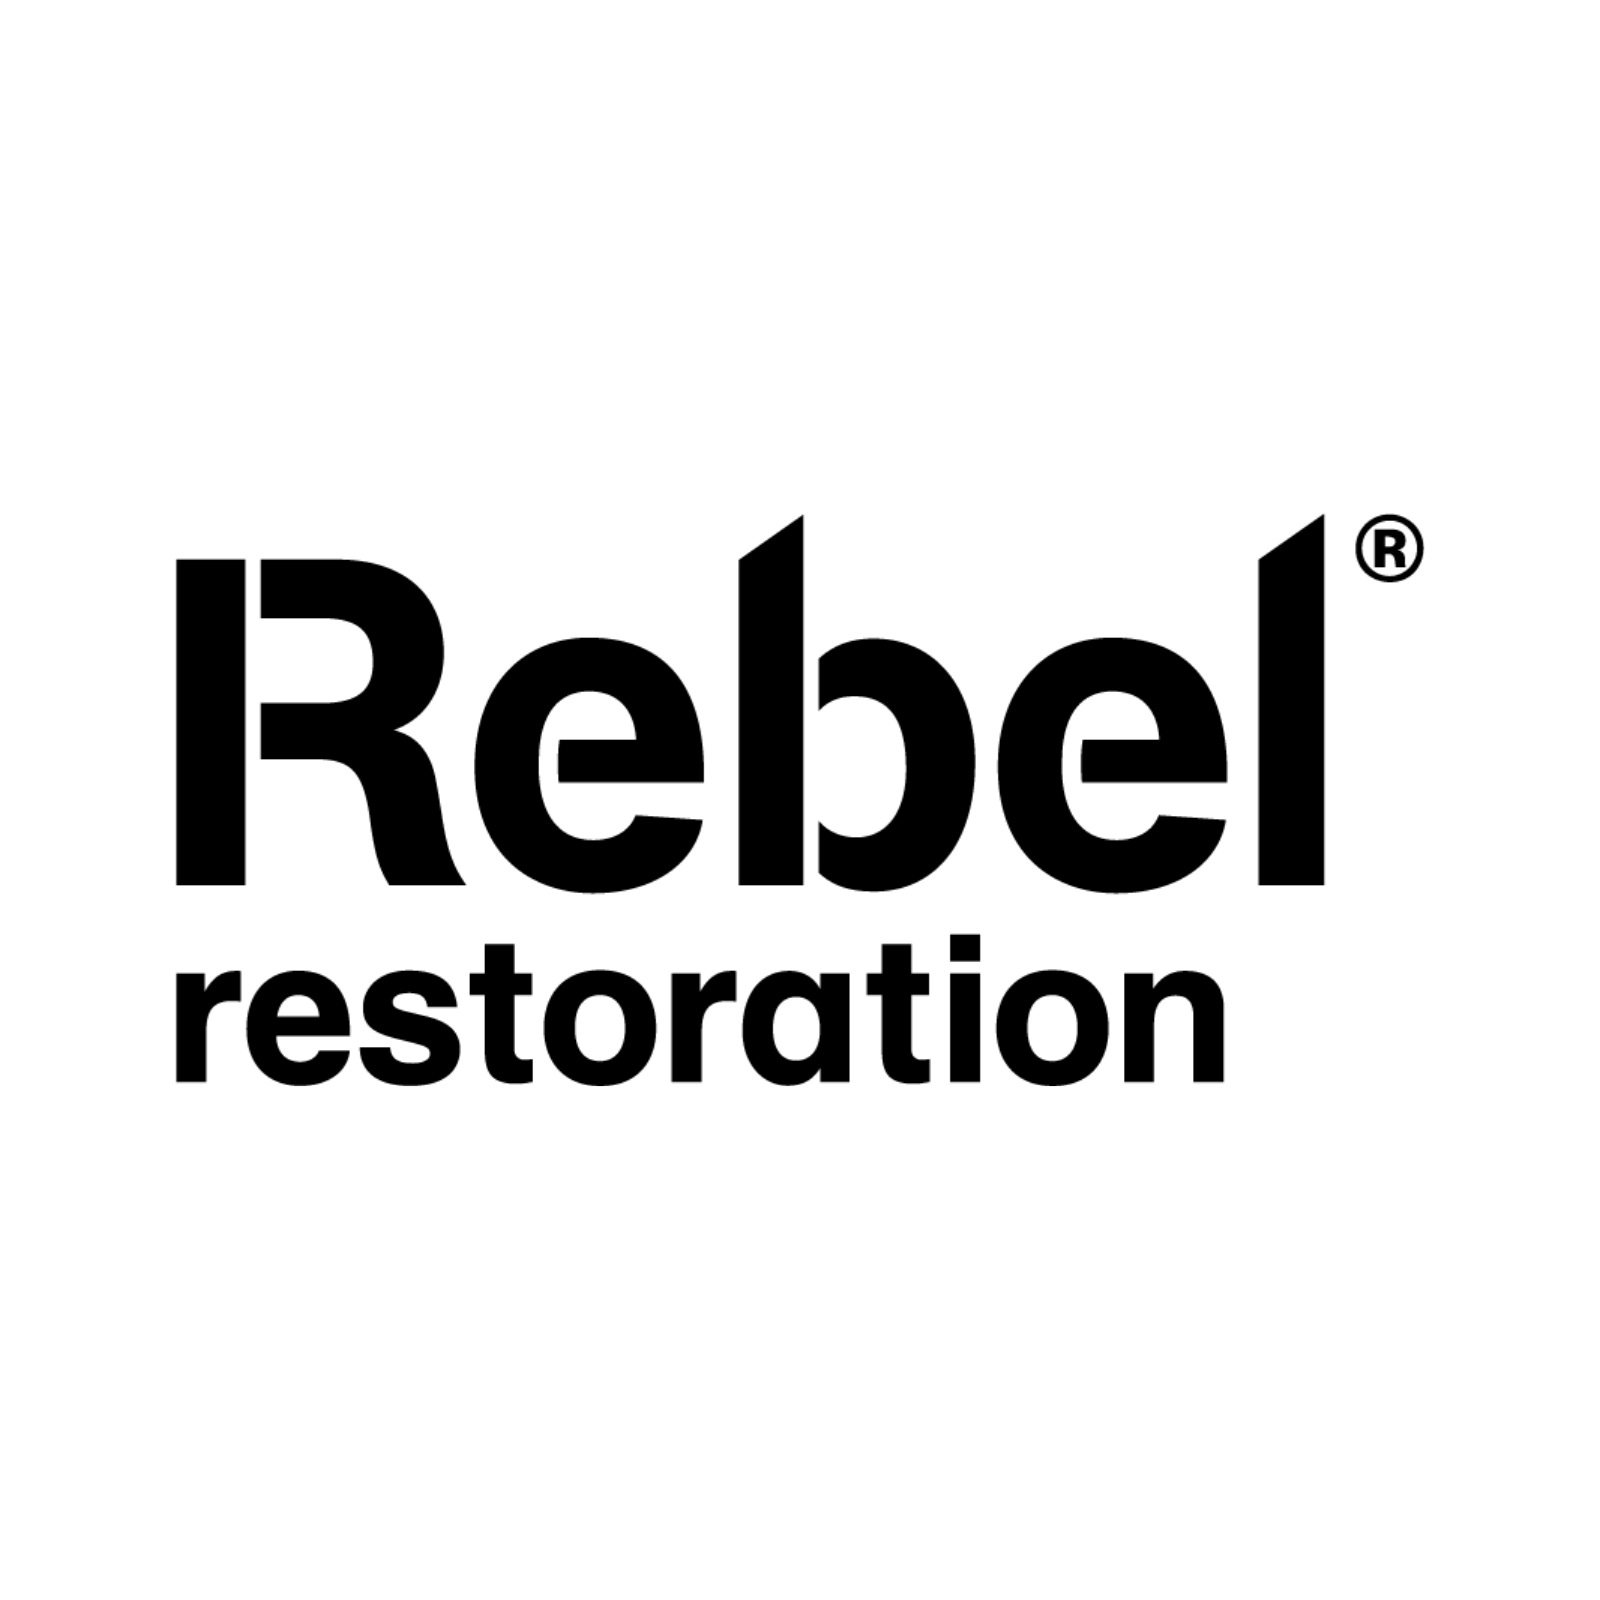 The logo of Rebel Restoration